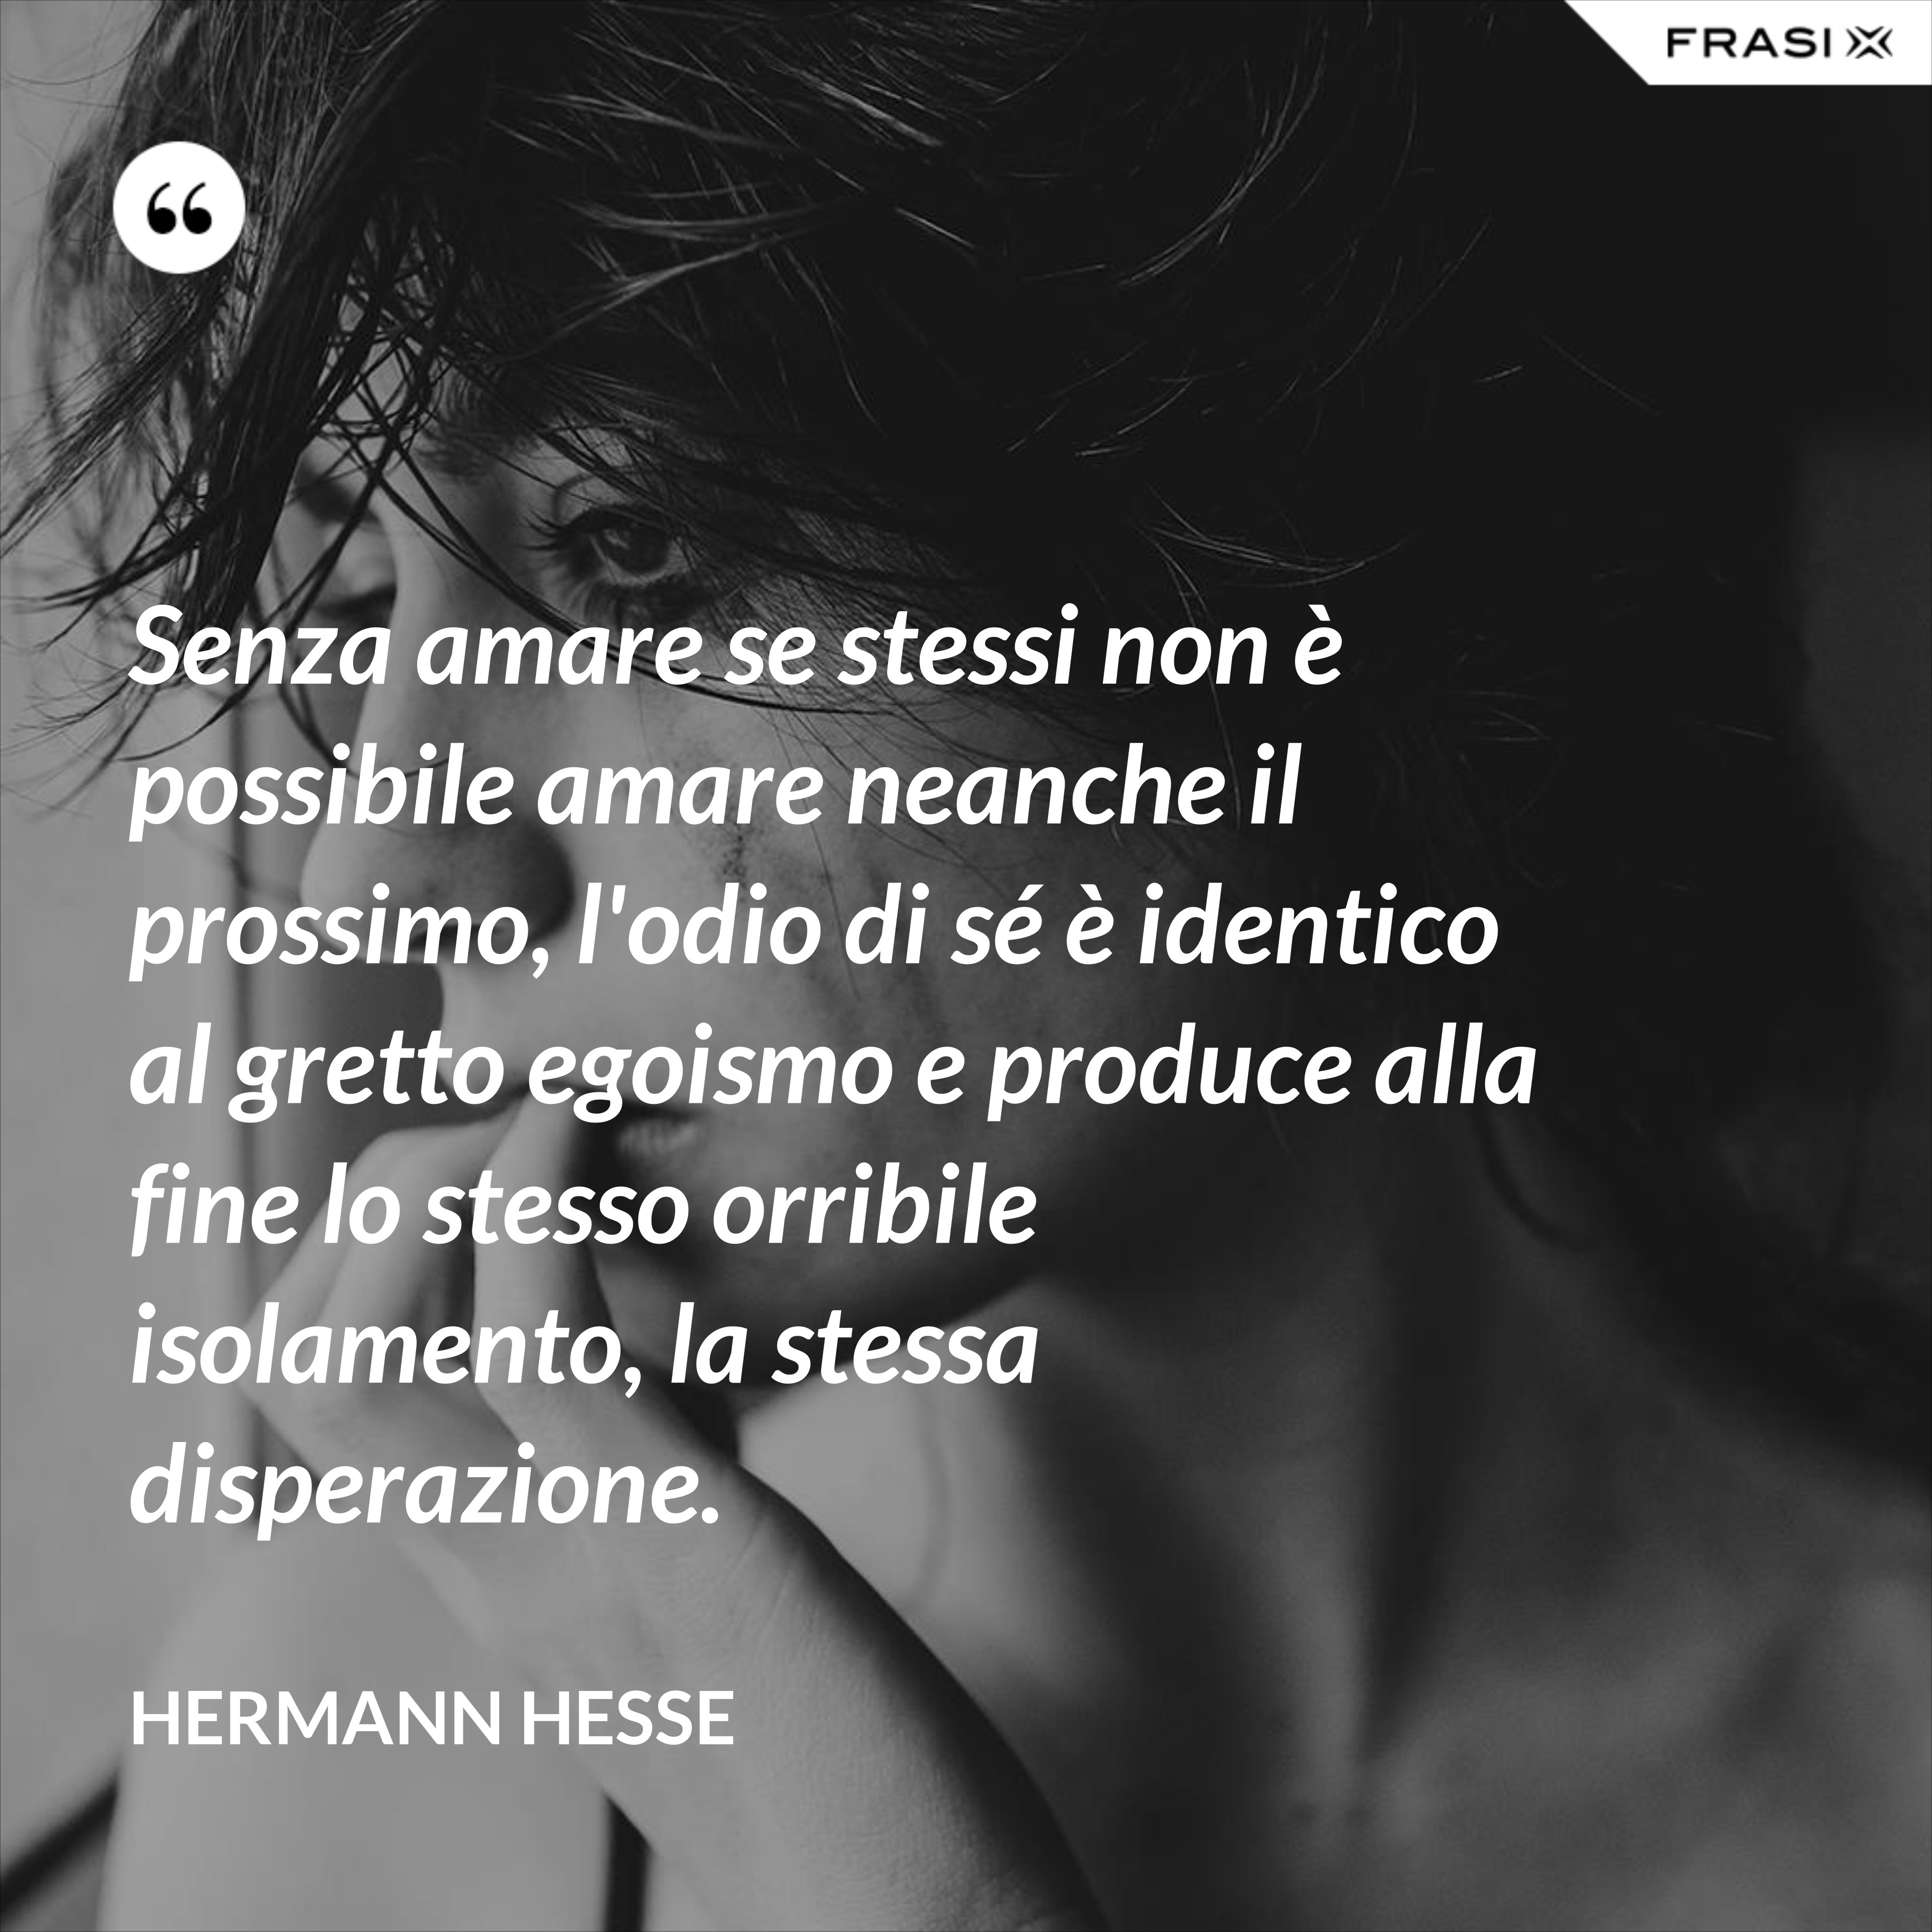 Senza amare se stessi non è possibile amare neanche il prossimo, l'odio di sé è identico al gretto egoismo e produce alla fine lo stesso orribile isolamento, la stessa disperazione. - Hermann Hesse